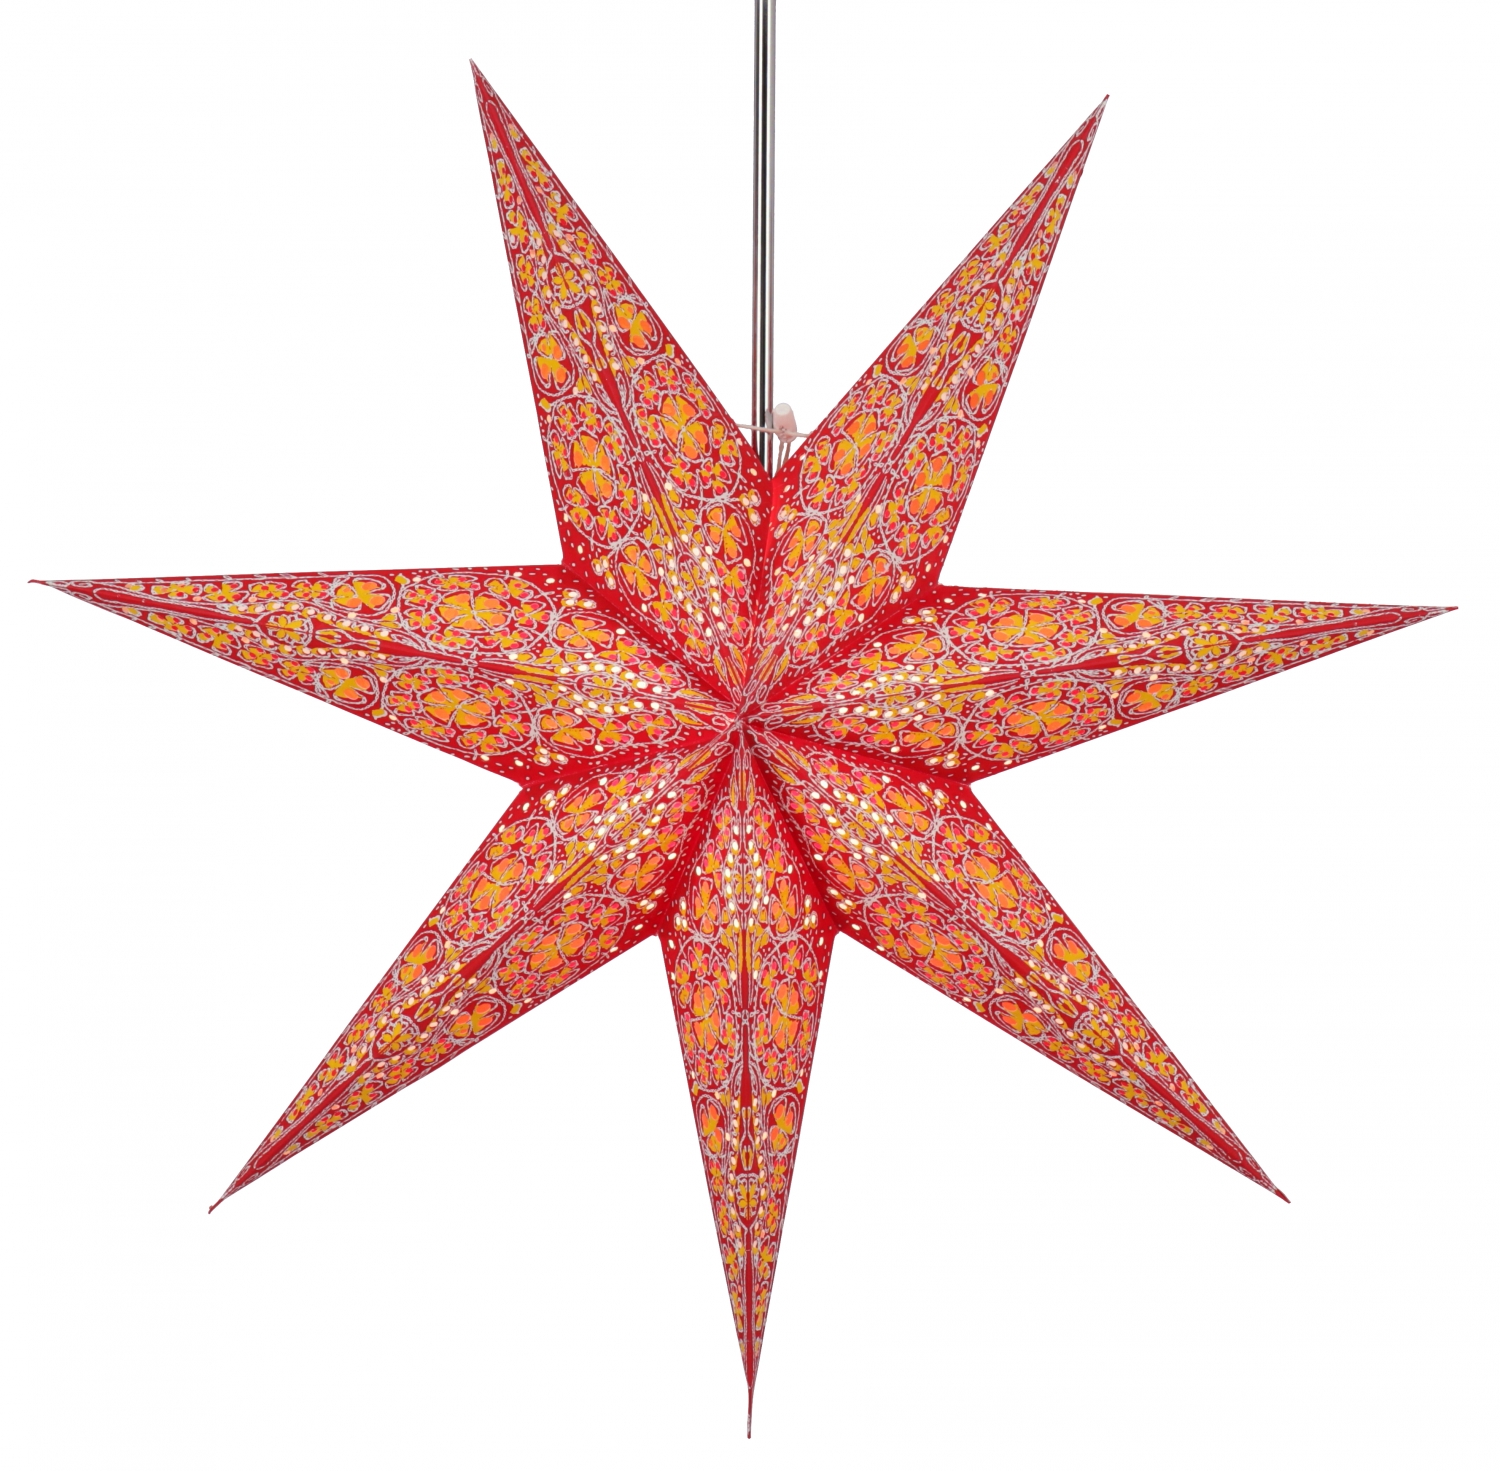 Papierstern Leuchtstern Weihnachtsstern pink lila rot 60cm inkl Kabel Fassung 